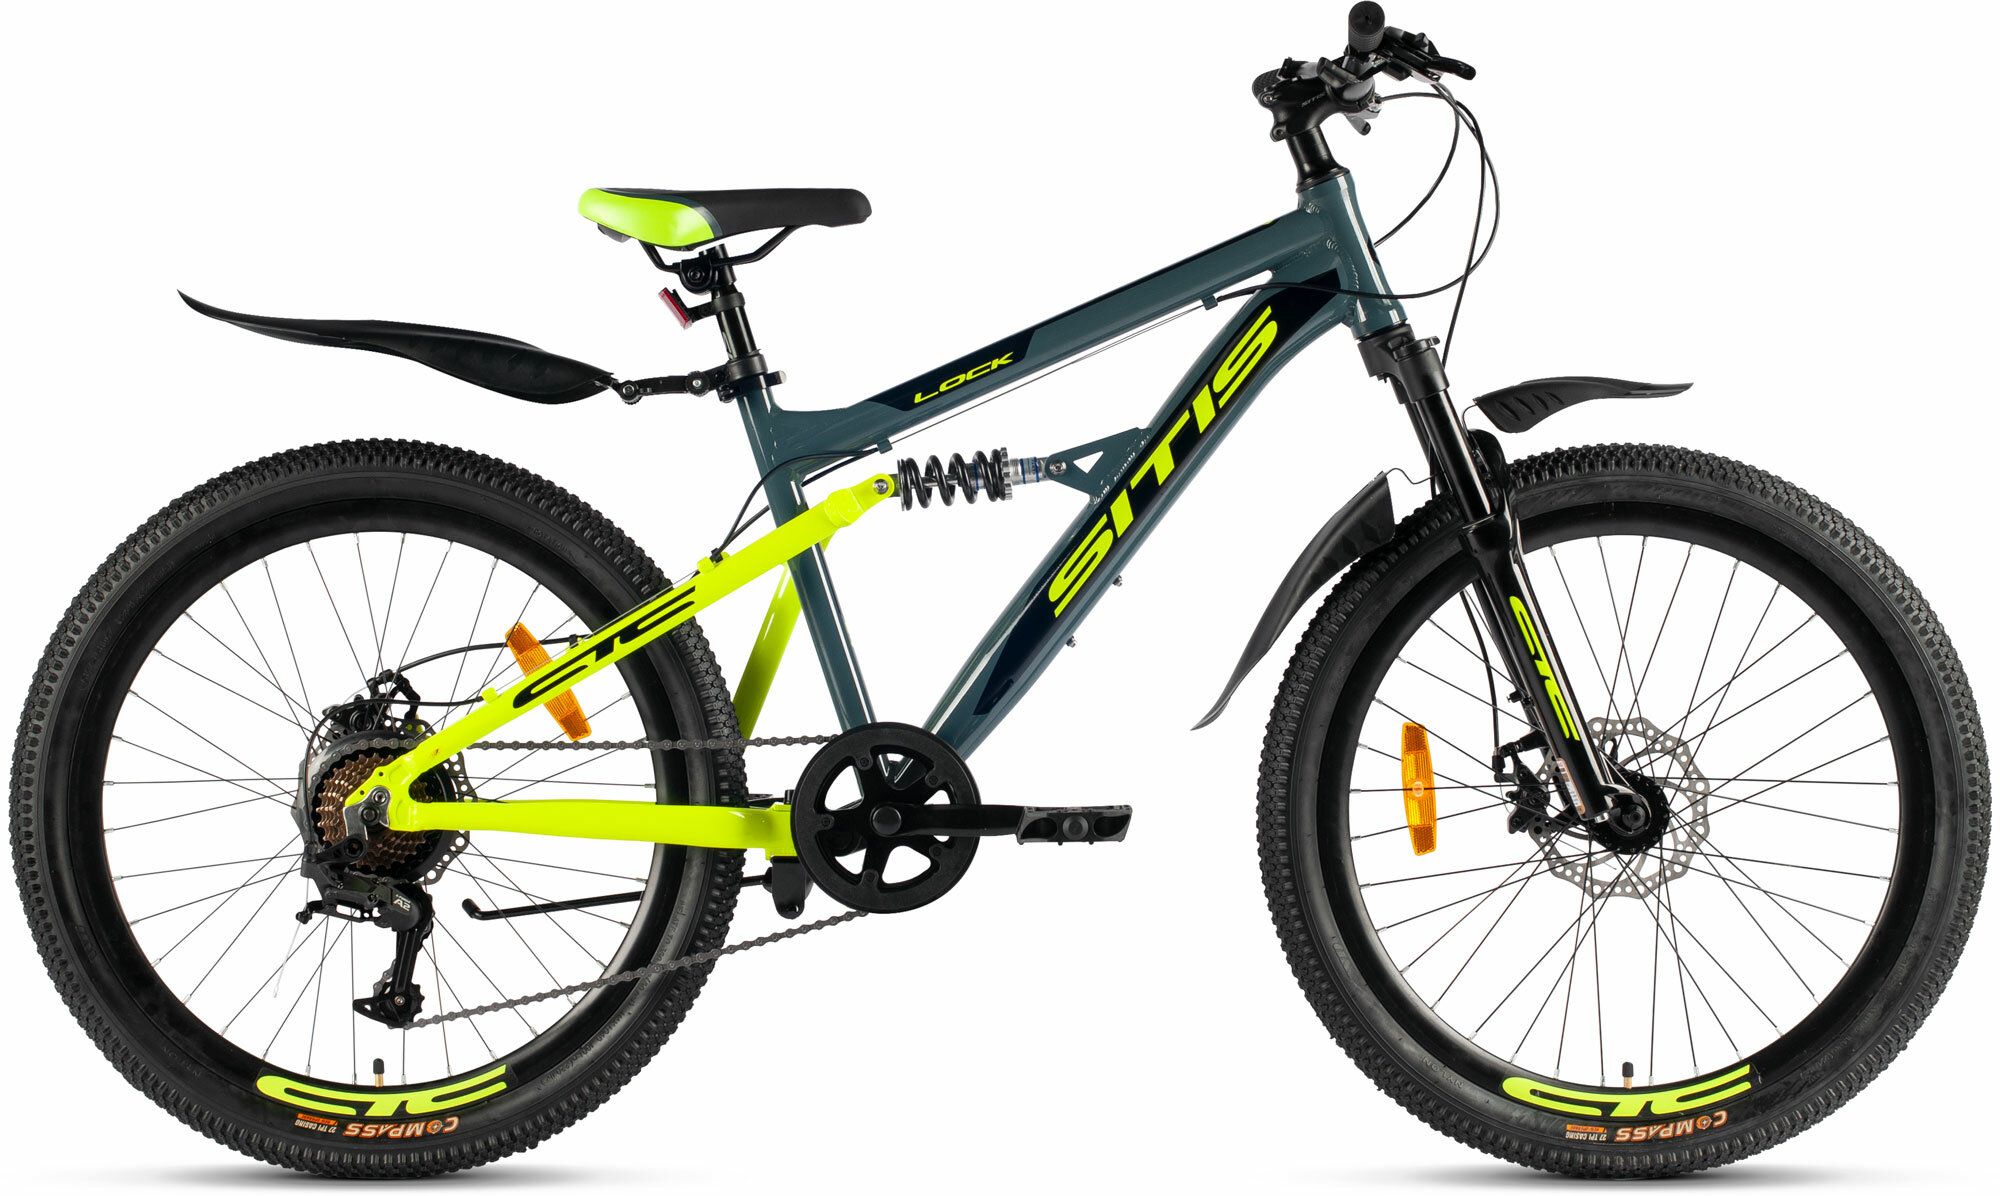 Велосипед горный SITIS LOCK 24" (2023), full-suspension, детский, для мальчиков, мужской, алюминиевая рама, 7 скоростей, дисковые механические тормоза, цвет Dark Grey-Green-Black, серый/зеленый/черный цвет, размер рамы 12", для роста 130-145 см